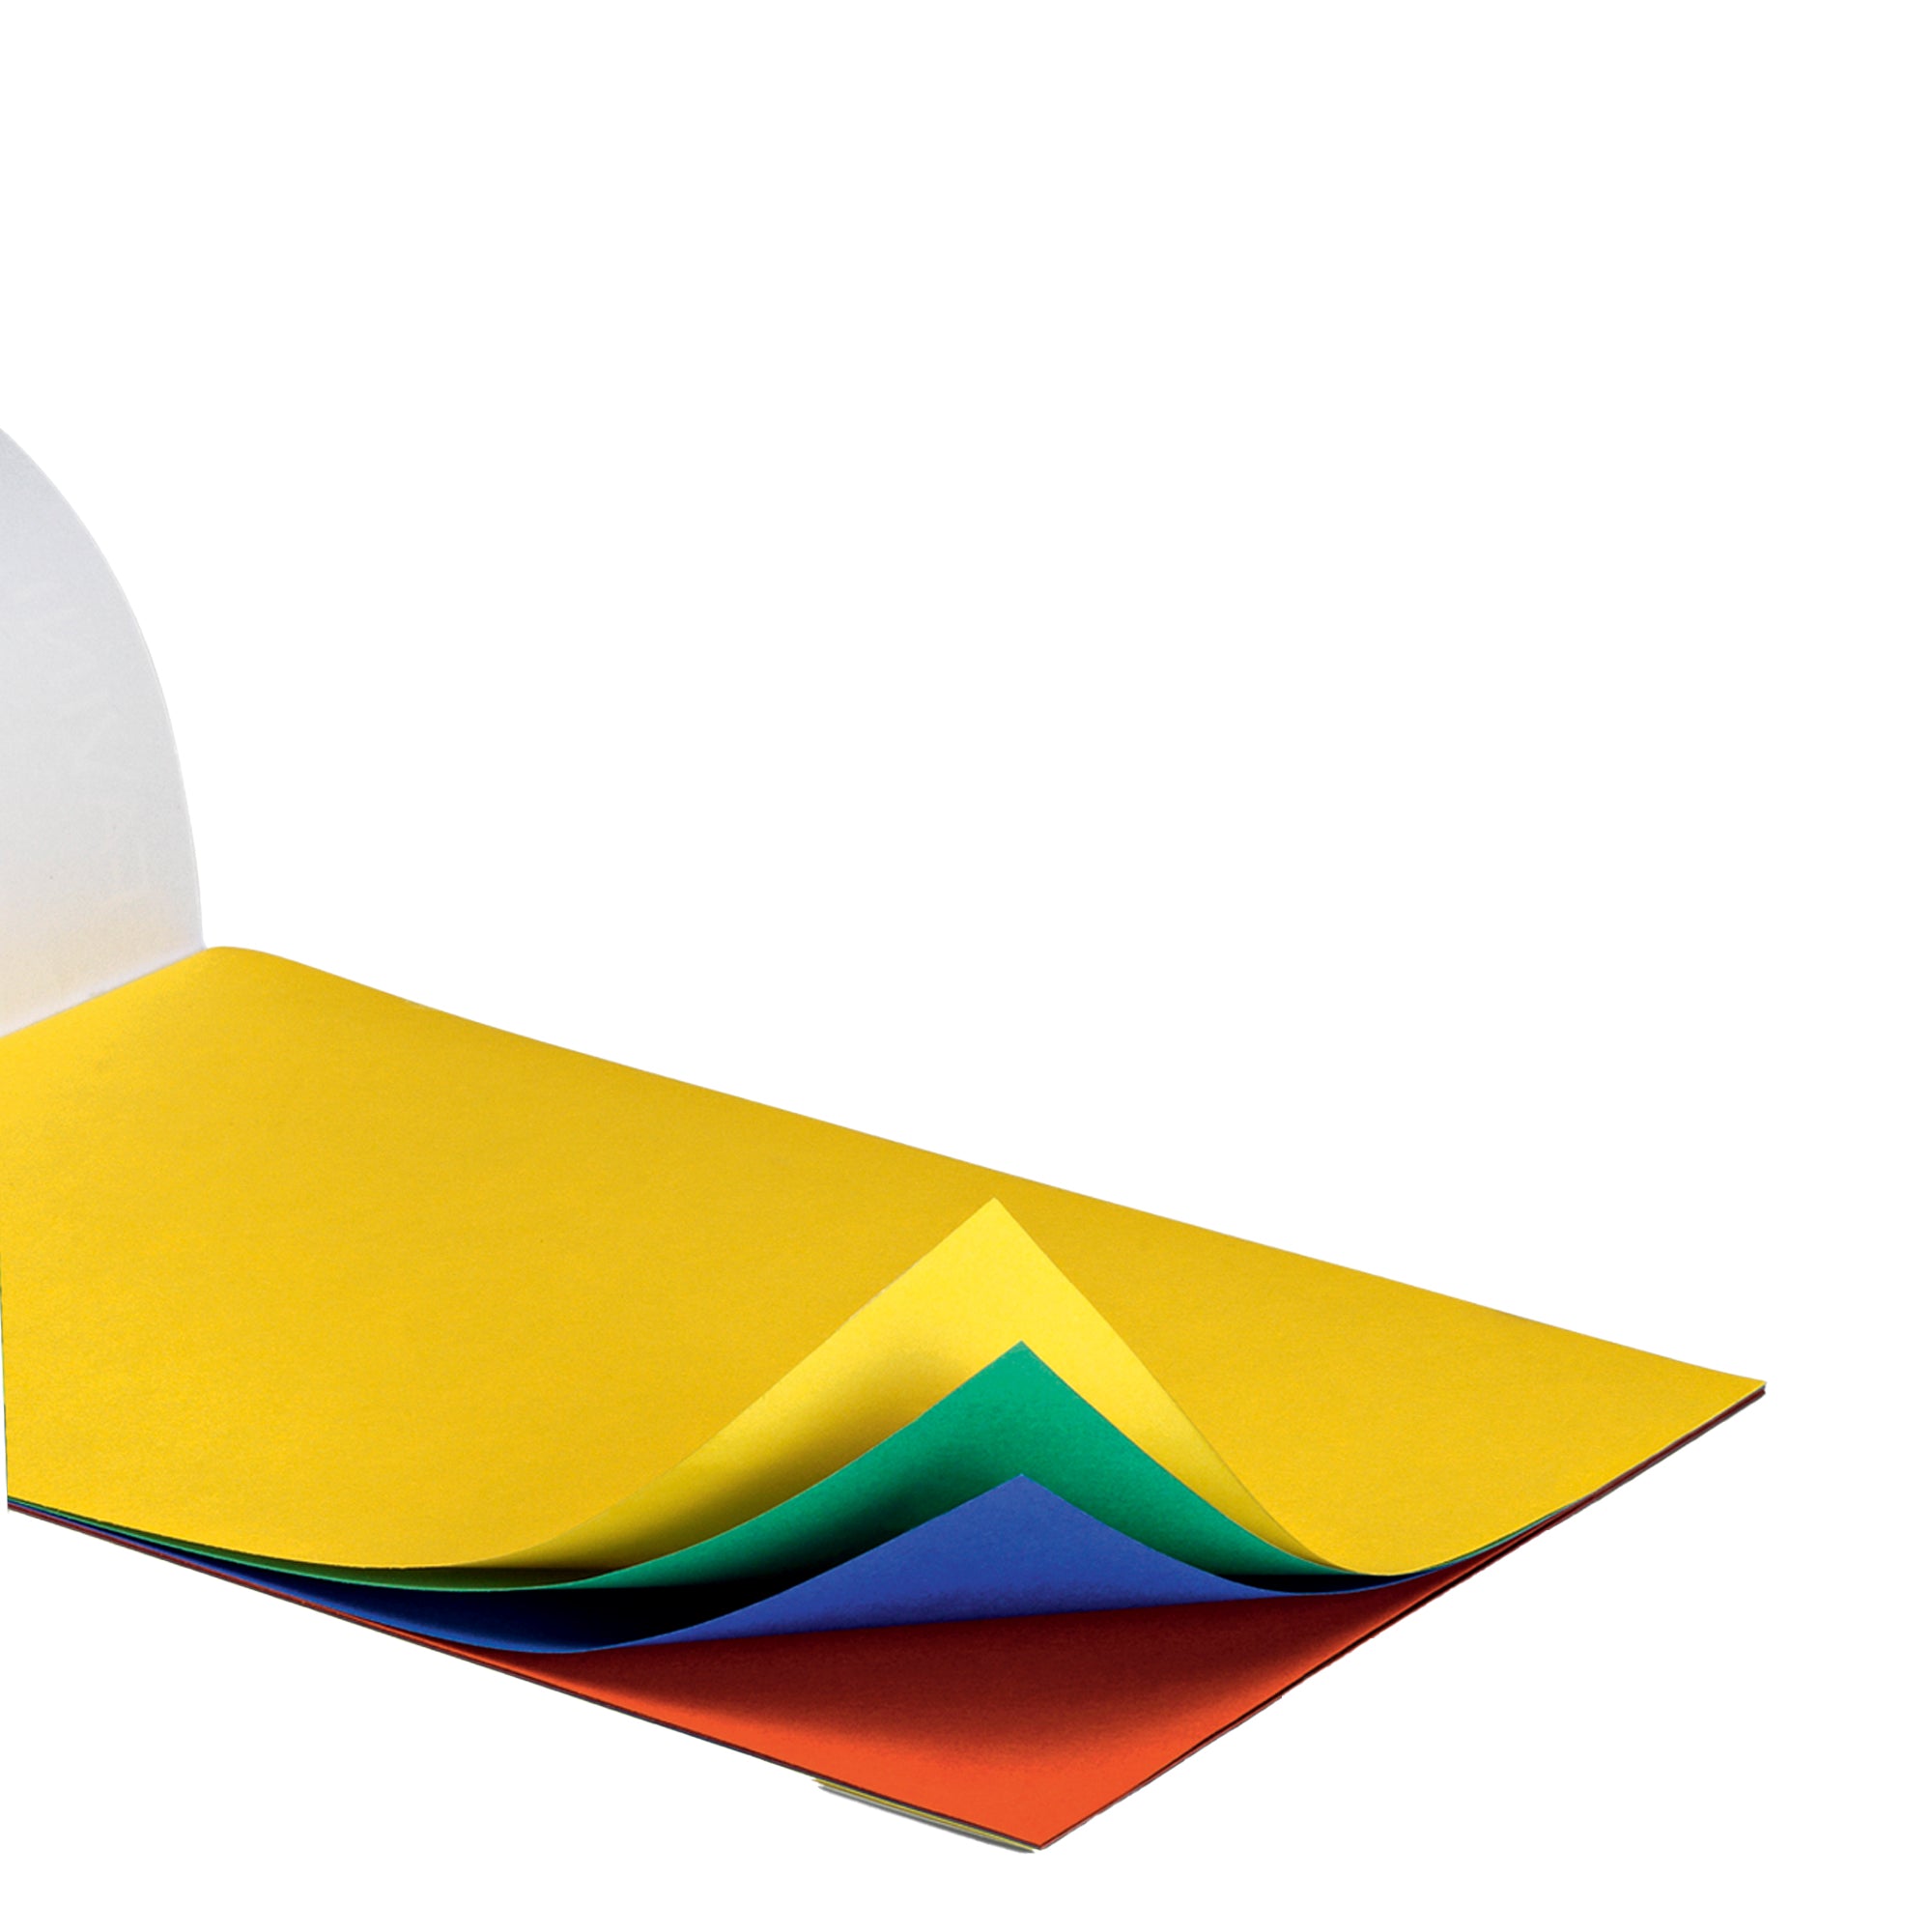 favini-album-prismacolor-10fg-128gr-24x33cm-monoruvido